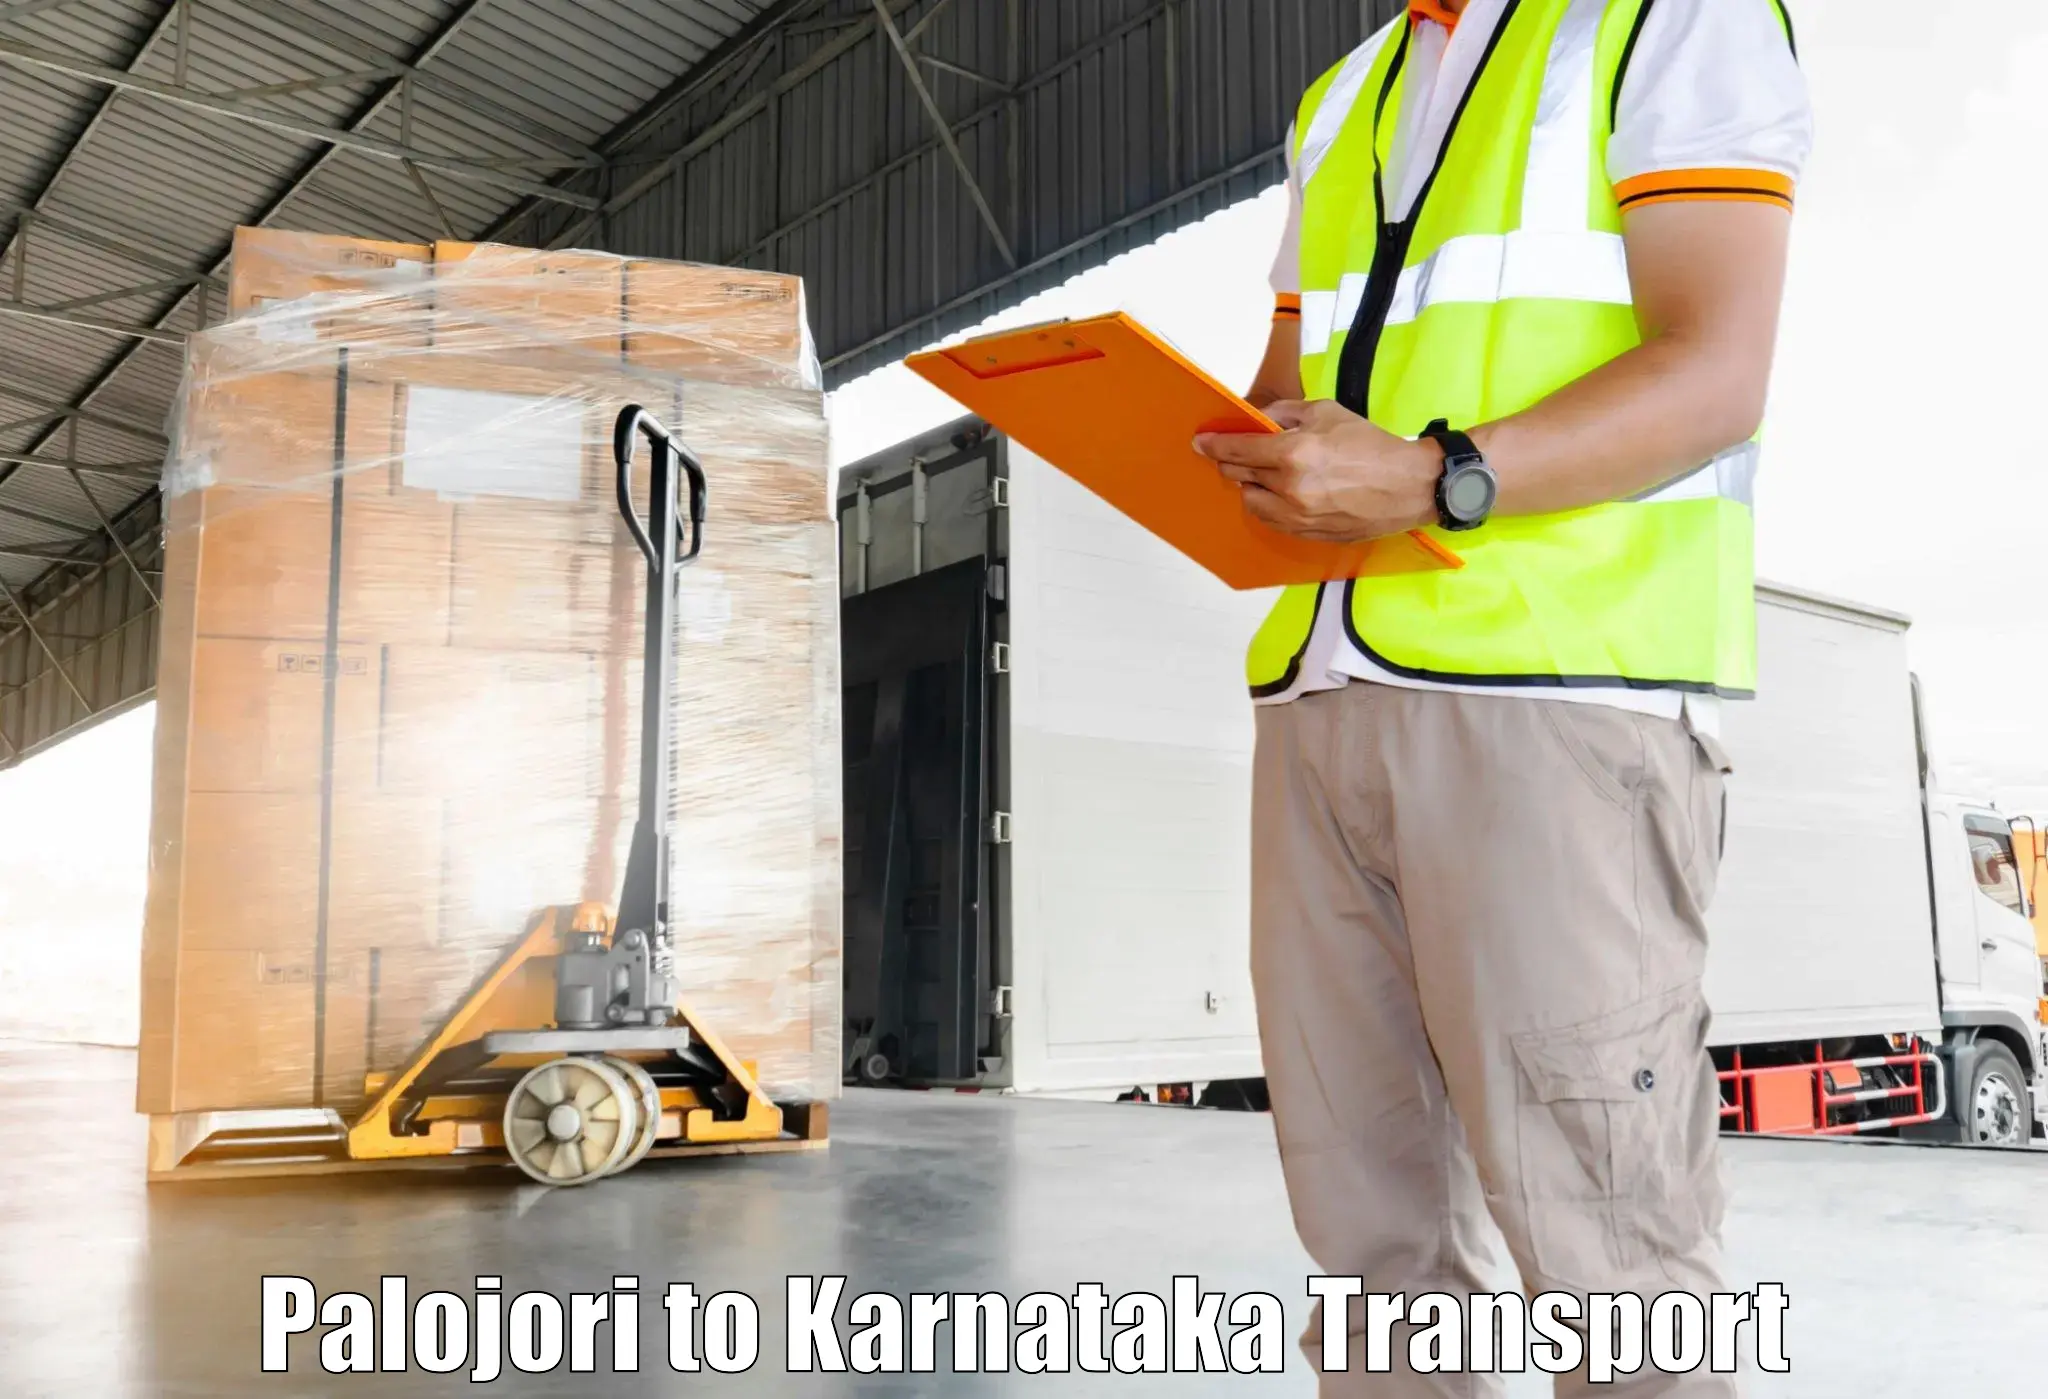 Online transport booking in Palojori to Tumkur